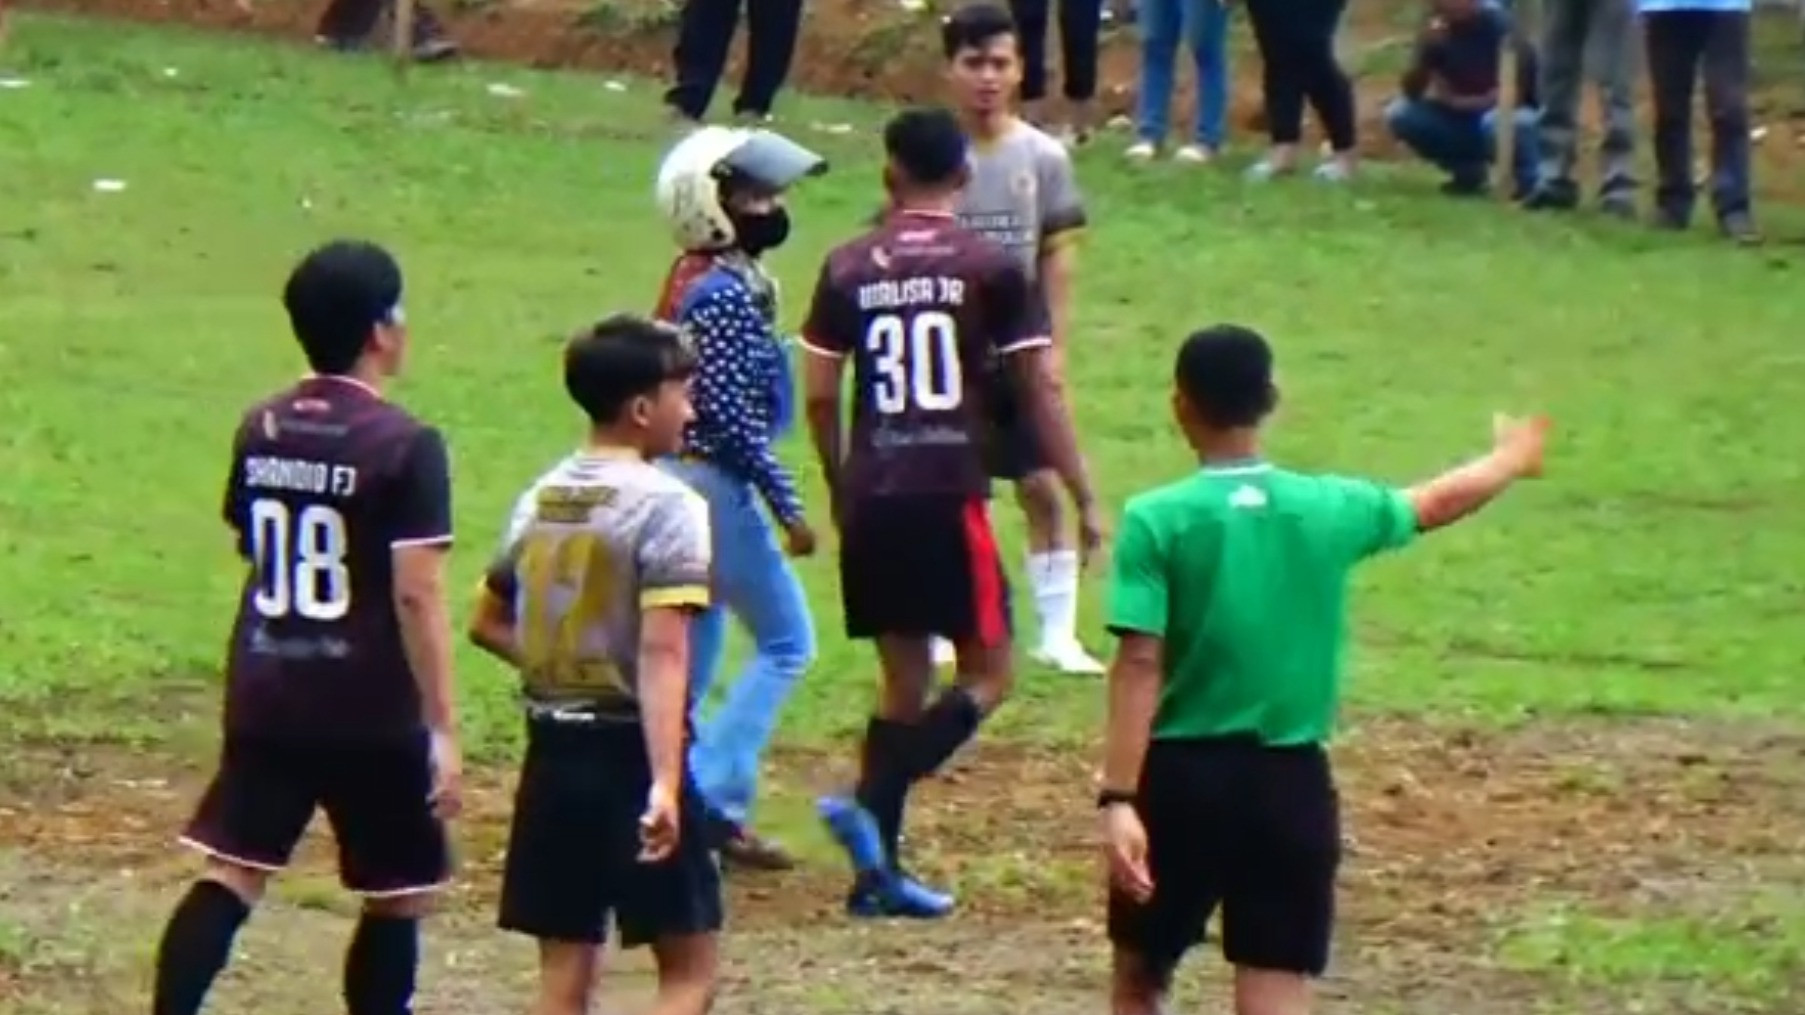 Seorang istri bernama Siti Aminah alias Si Iteung nekat nyelonong masuk ke lapangan sepak bola saat laga antar kampung (tarkam). Ia dan suami ada masalah keluarga yang harus diselesaikan. (Foto: Instagram @radotvalent)